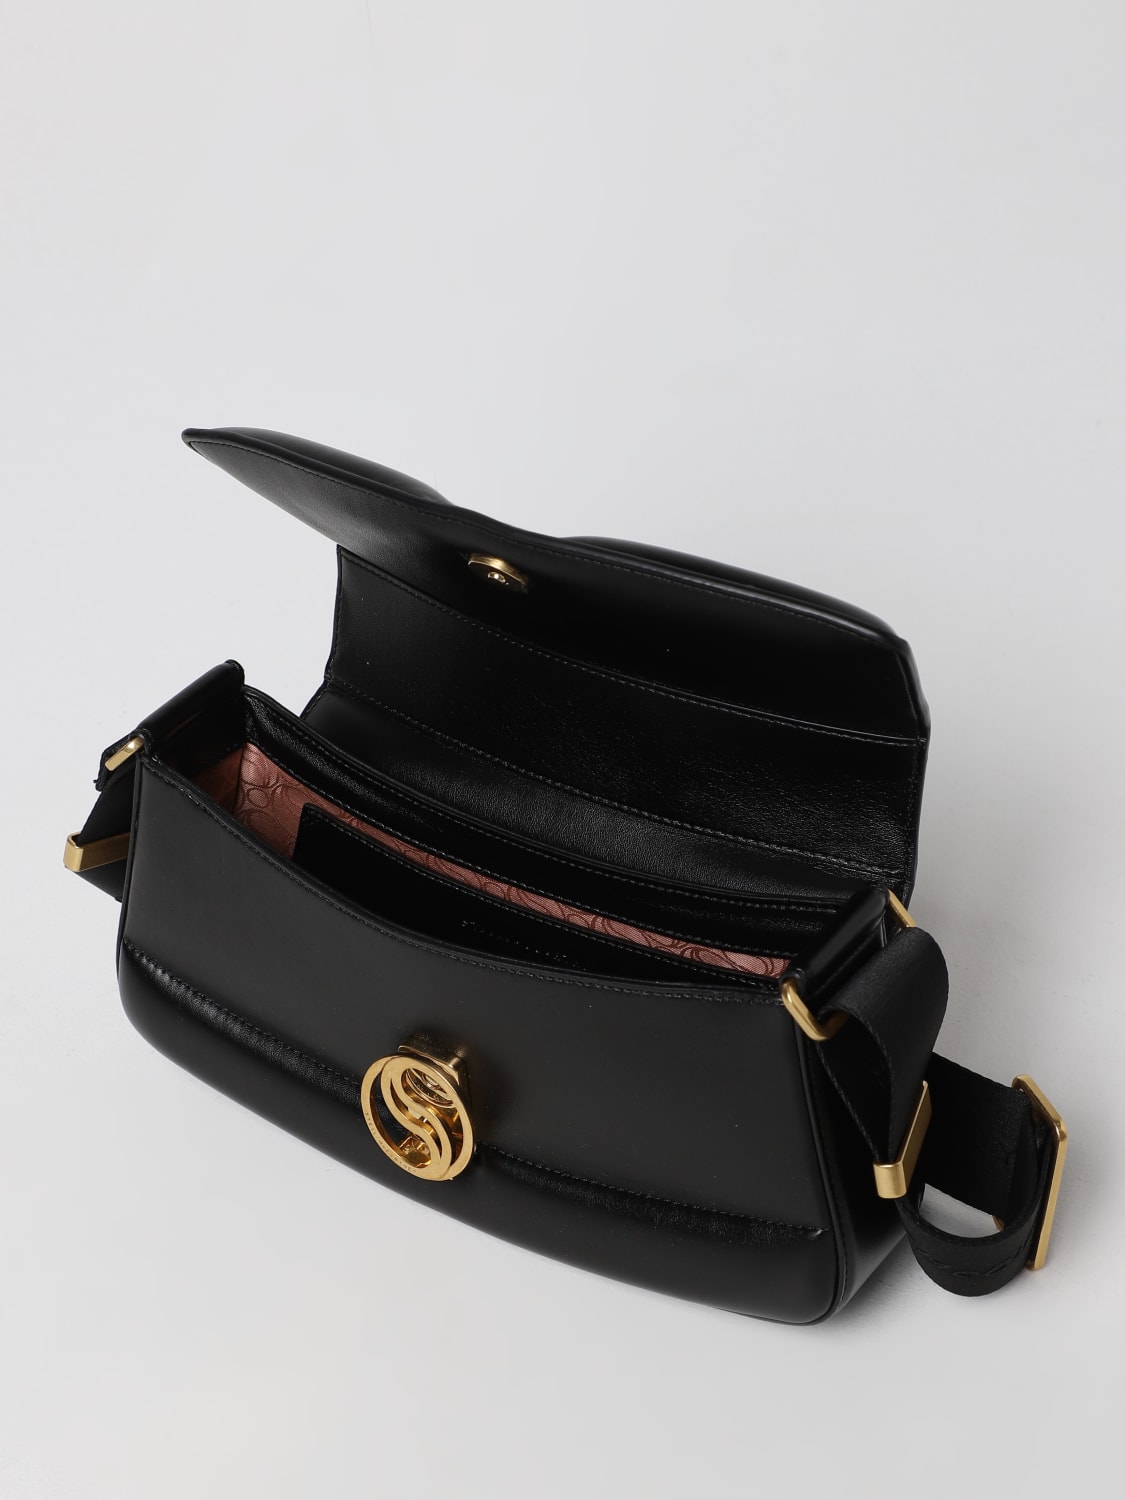 Stella McCartney S-Wave Monogram Shoulder Bag - Black